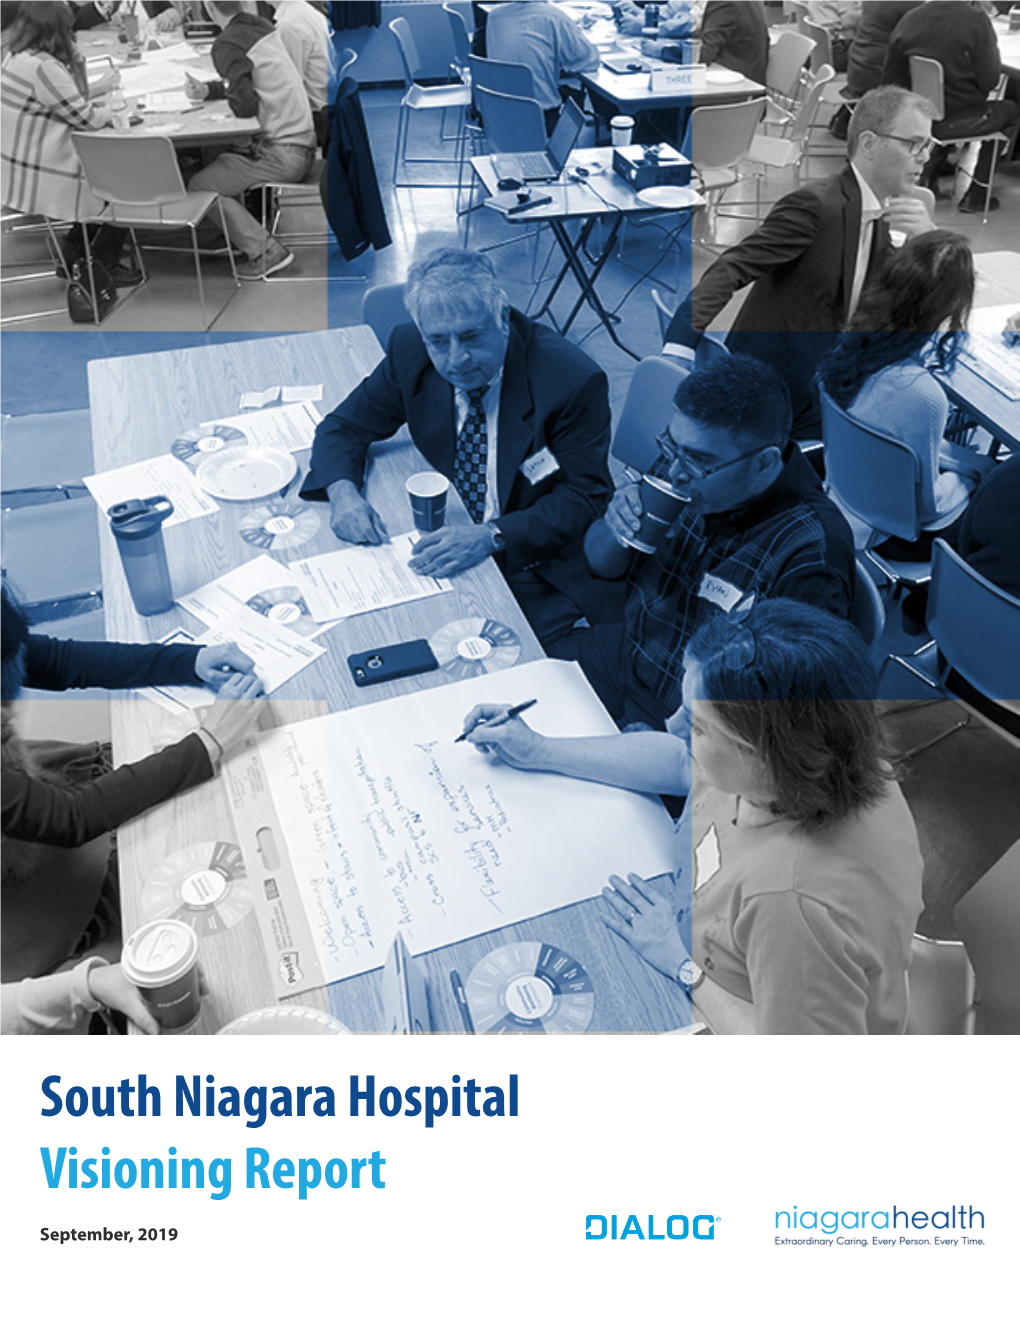 South Niagara Hospital Visioning Report